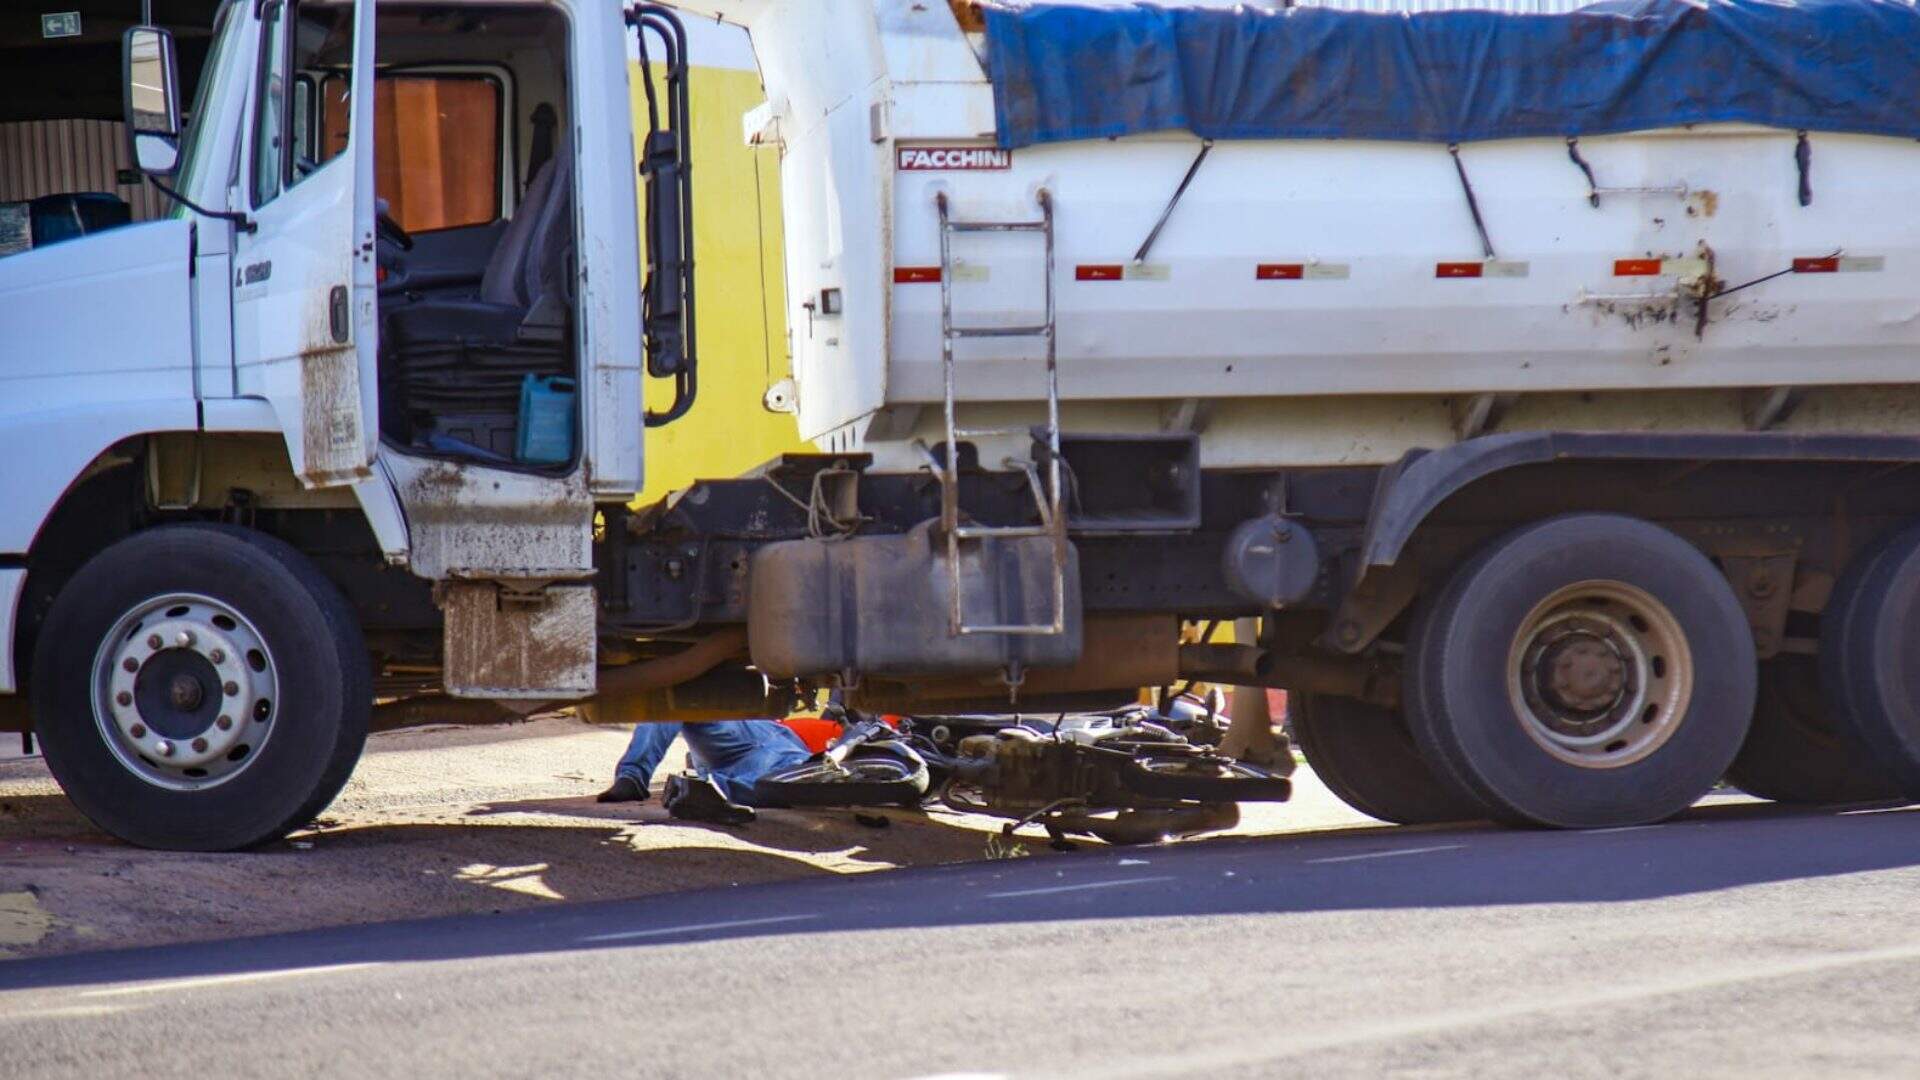 Motociclista é socorrido após colidir em caminhão caçamba carregado de areia